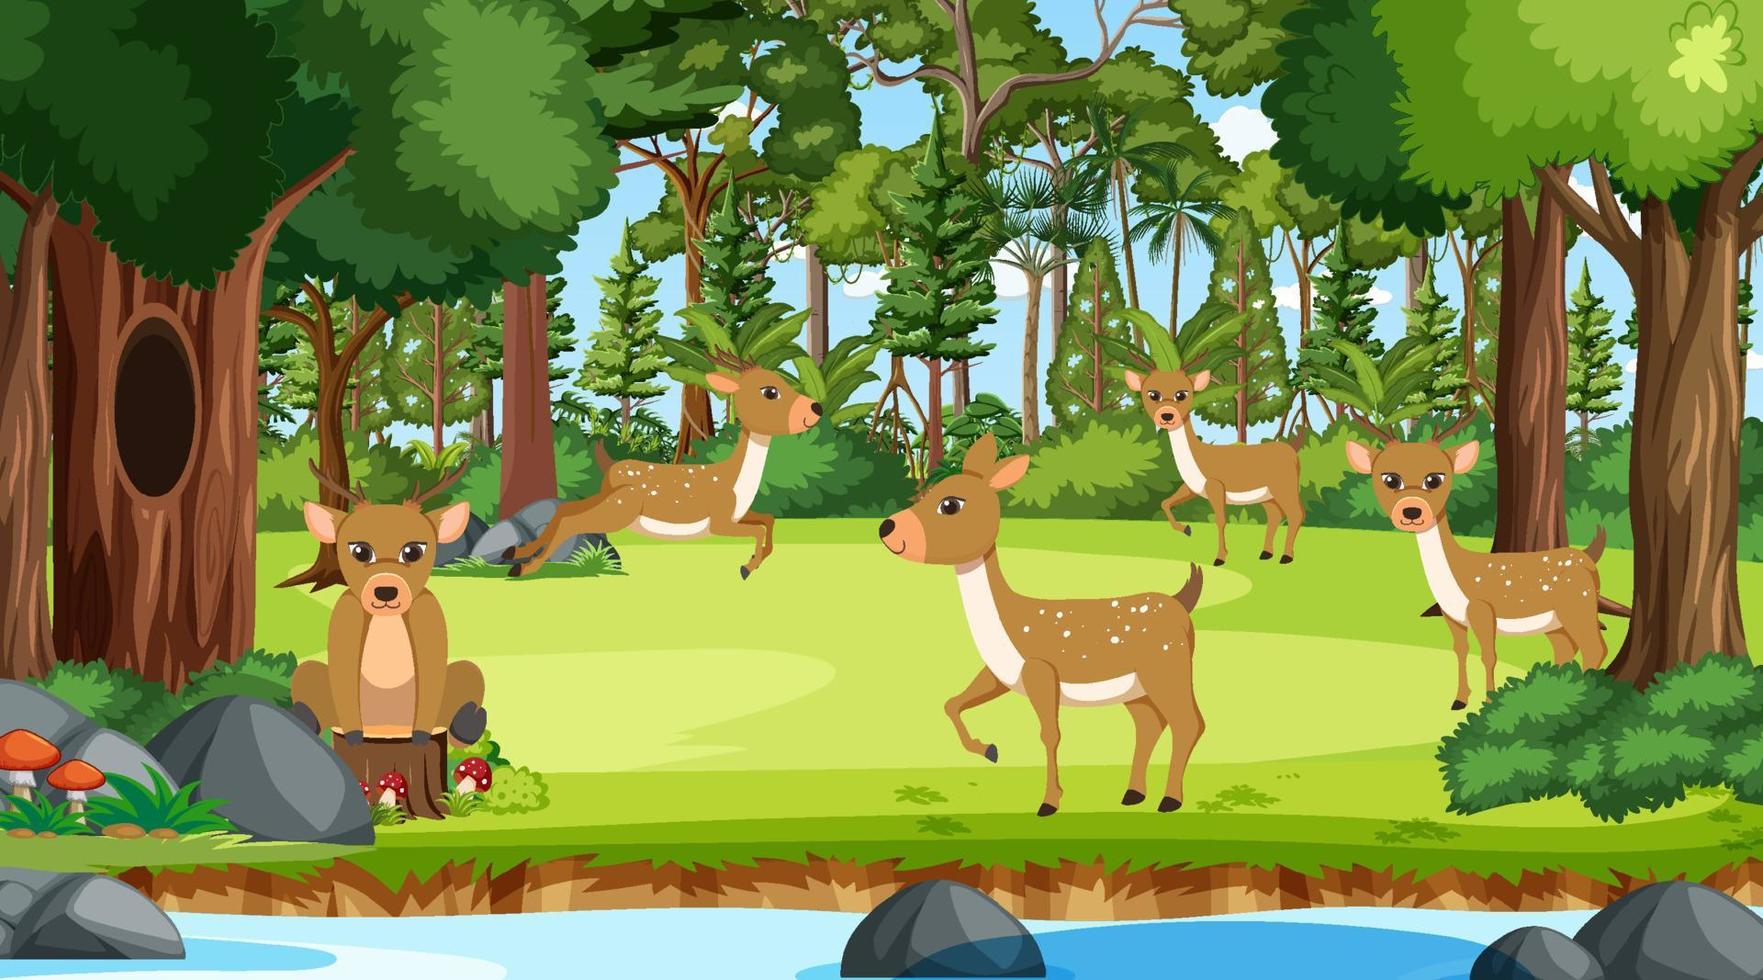 Deers in the forest scene vector